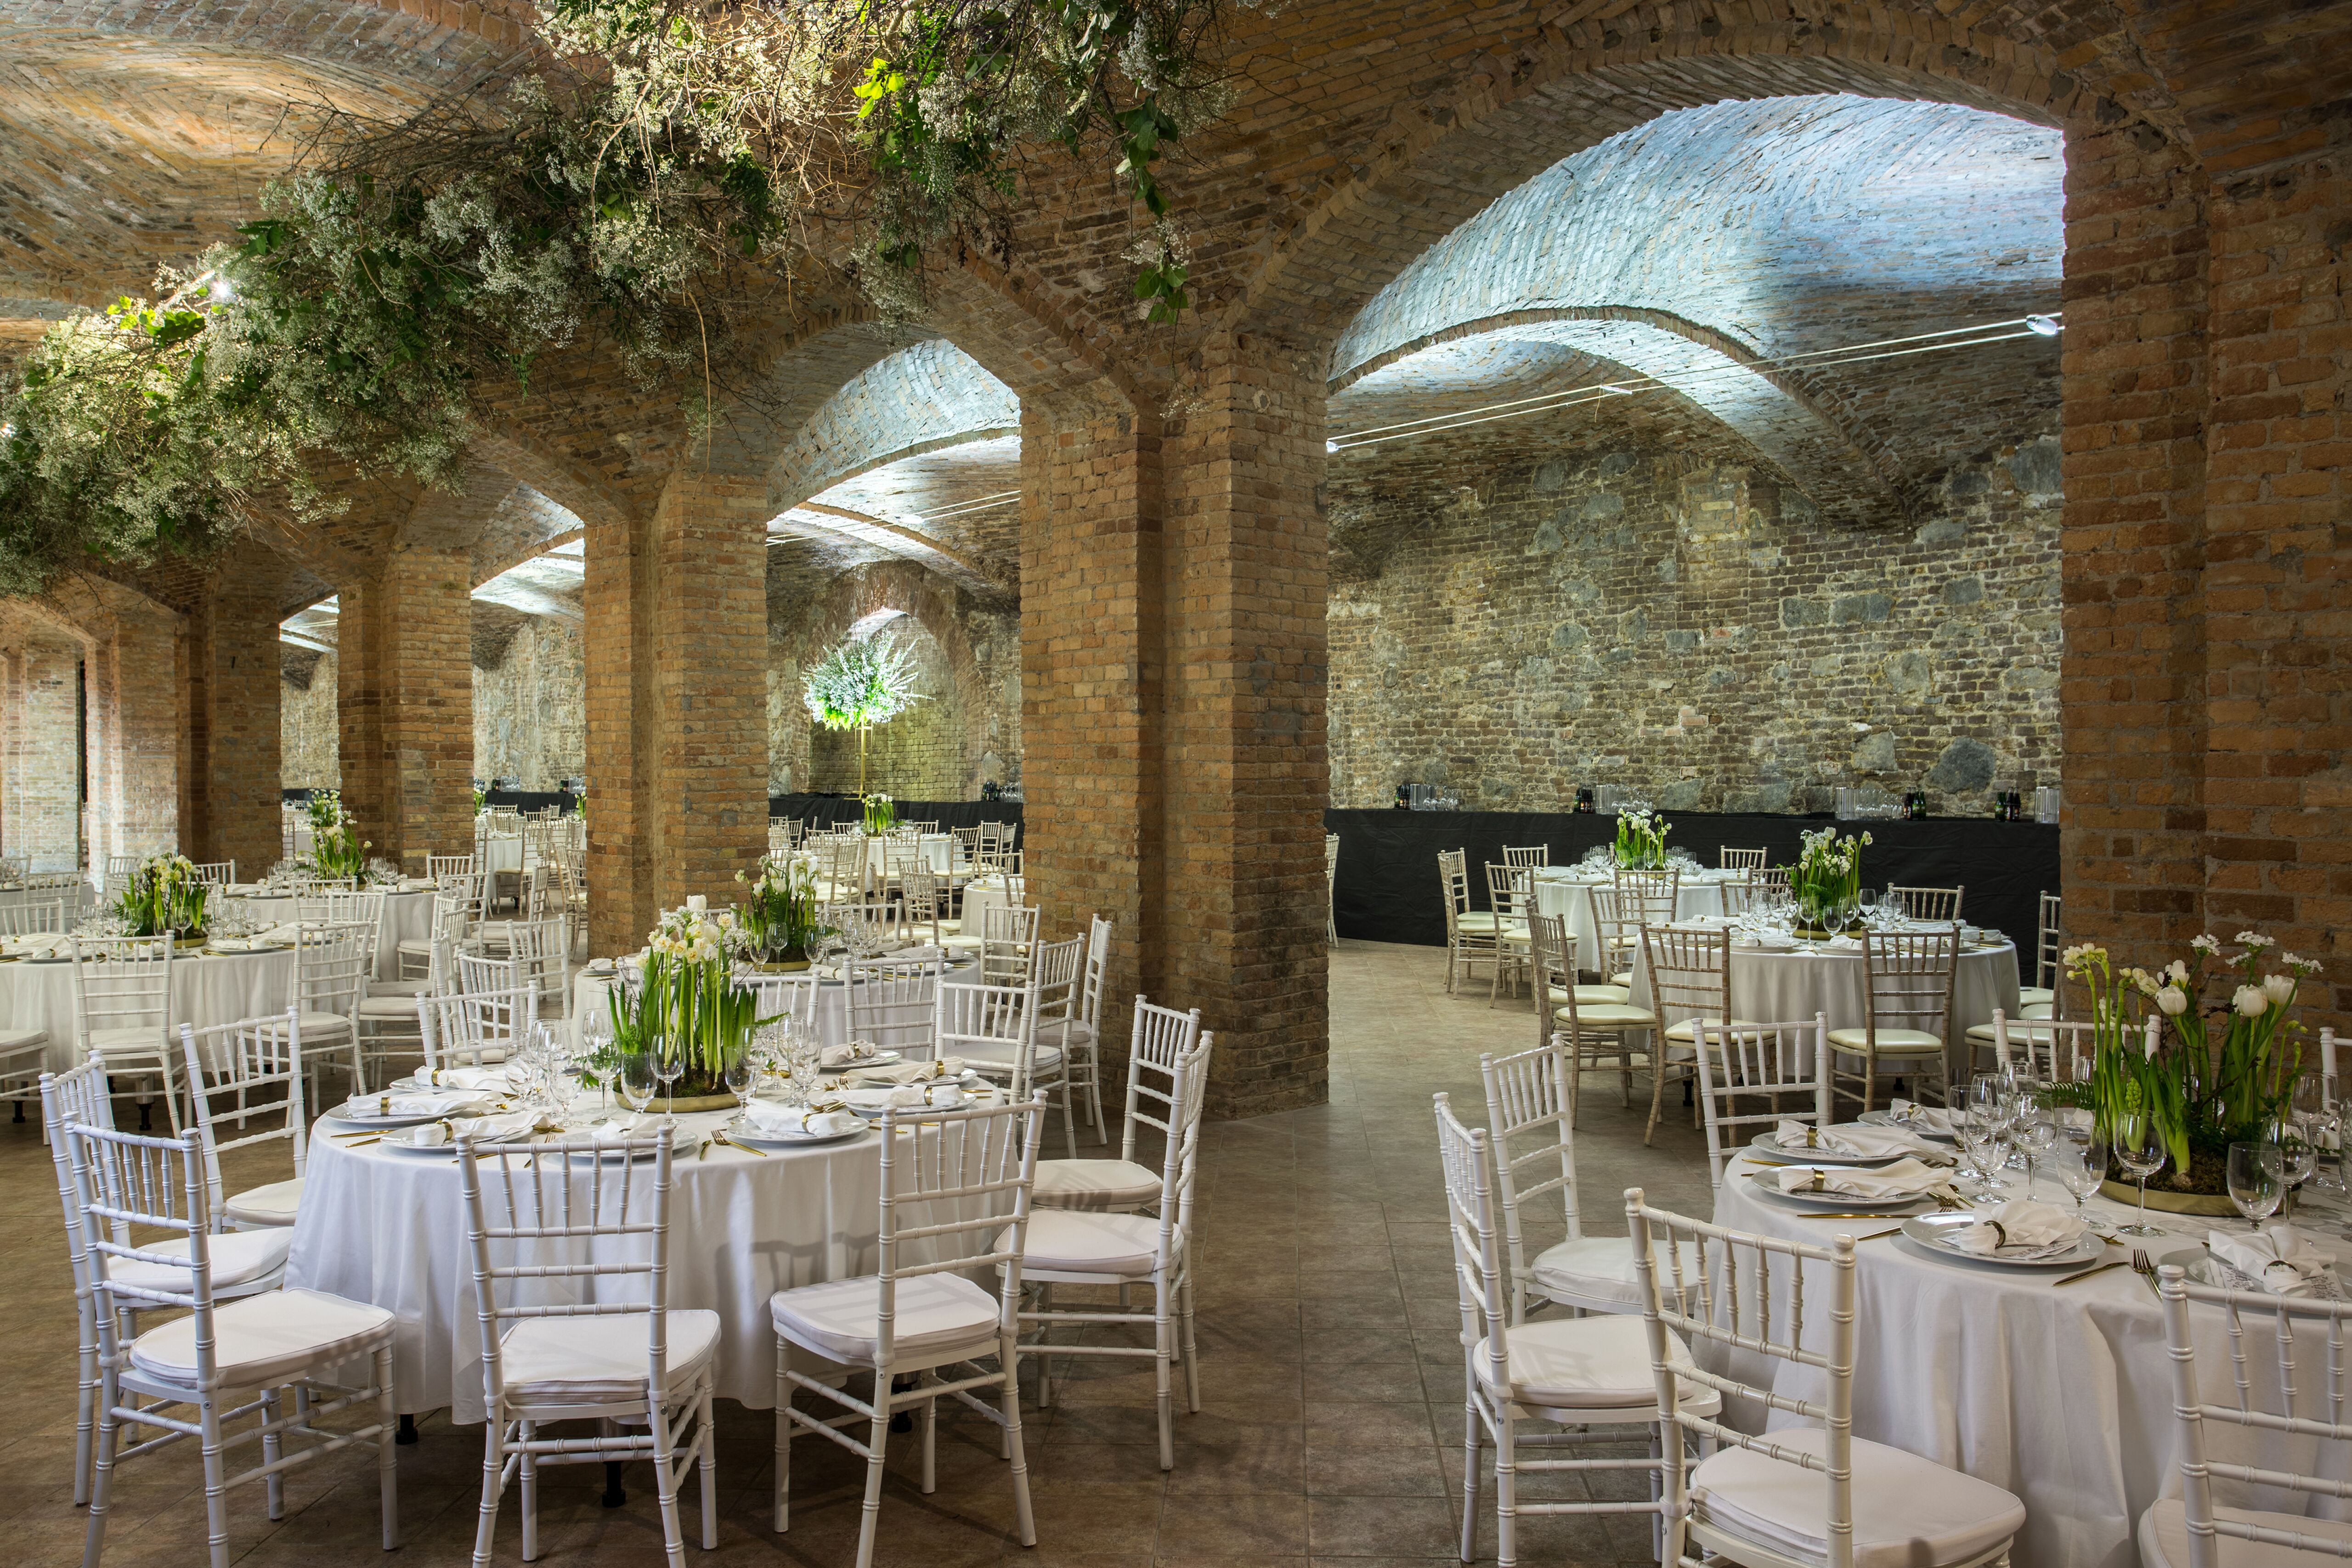 Tehlový Interiér sály plesu s oblúkovou klenbou a svetlou kvetinovou výzdobou.